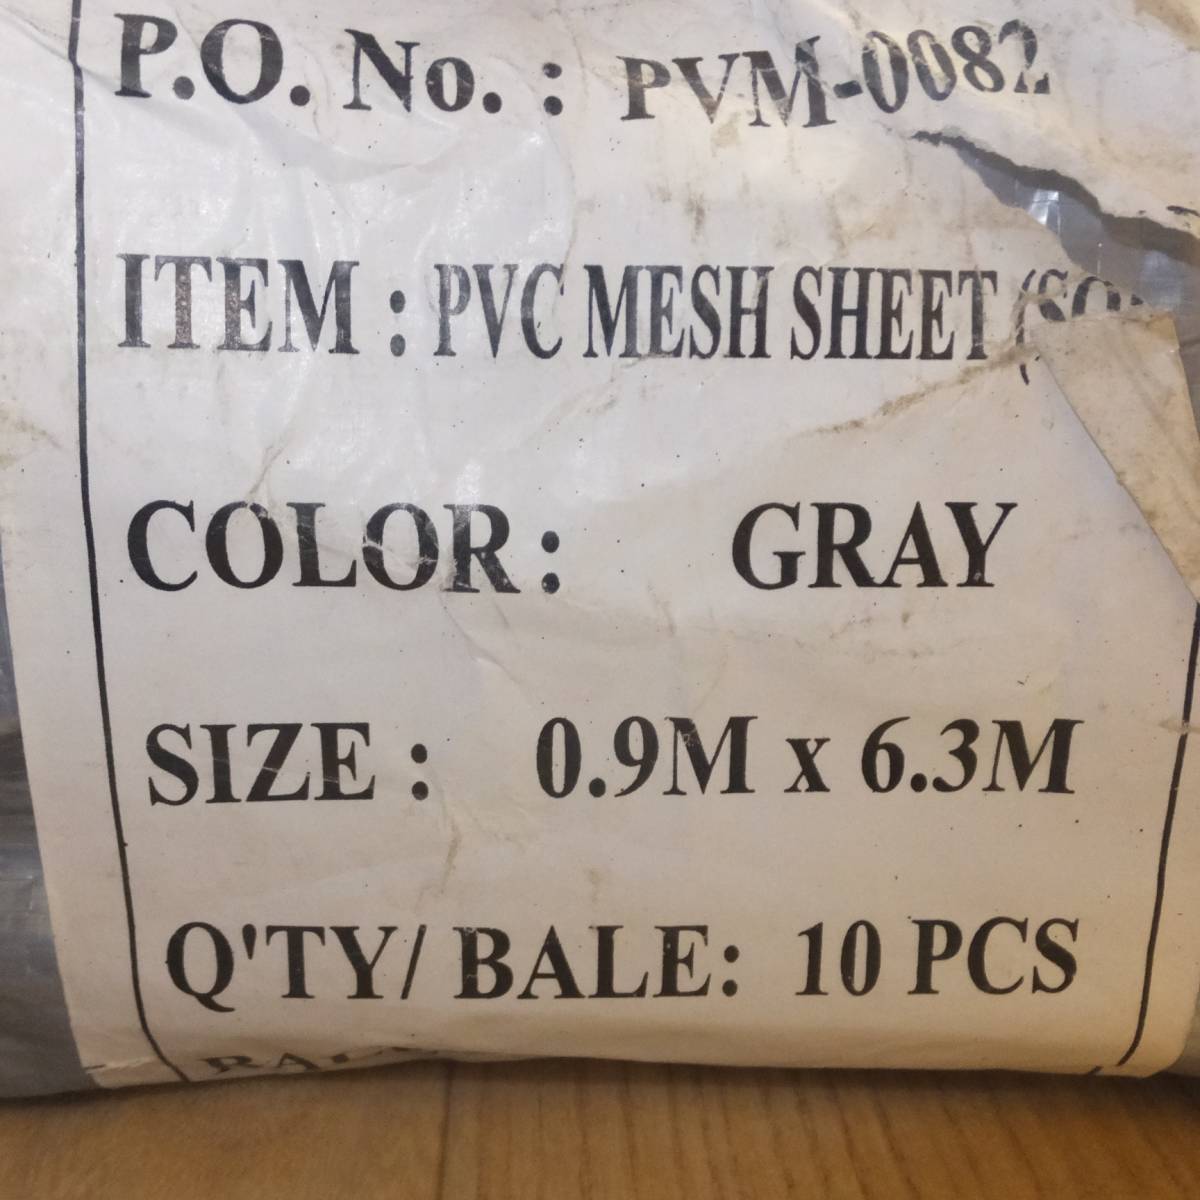 [送料無料] 未使用★メッシュシート PVC MESH SHEET(SOFT) PVM-0082 GRAY 0.9M×6.3M 10枚入 2点 セット メーカー 不明★の画像7